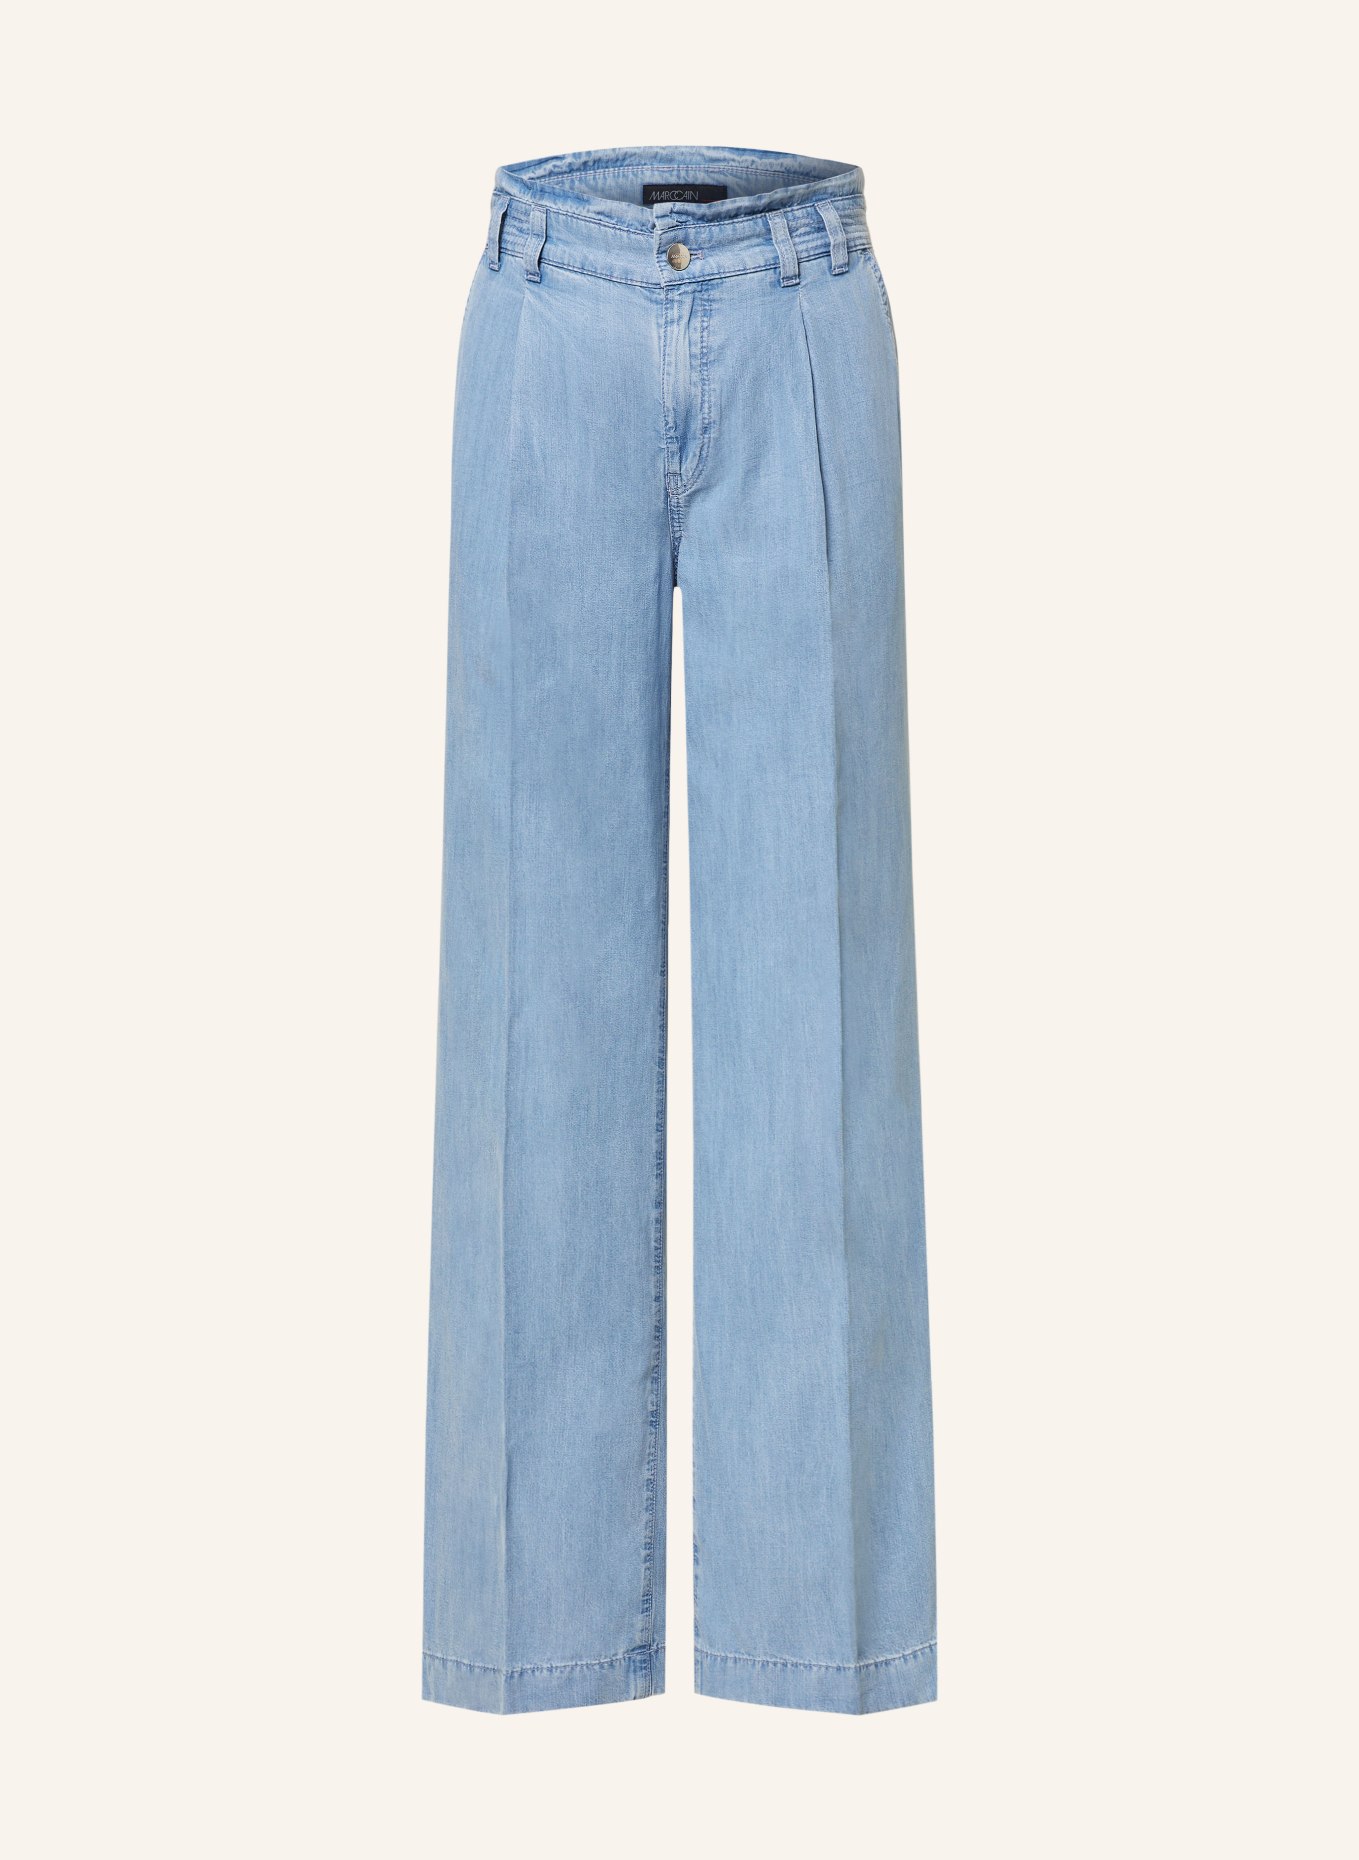 MARC CAIN Spodnie marlena WINONA w stylu jeansowym, Kolor: 350 light denim (Obrazek 1)